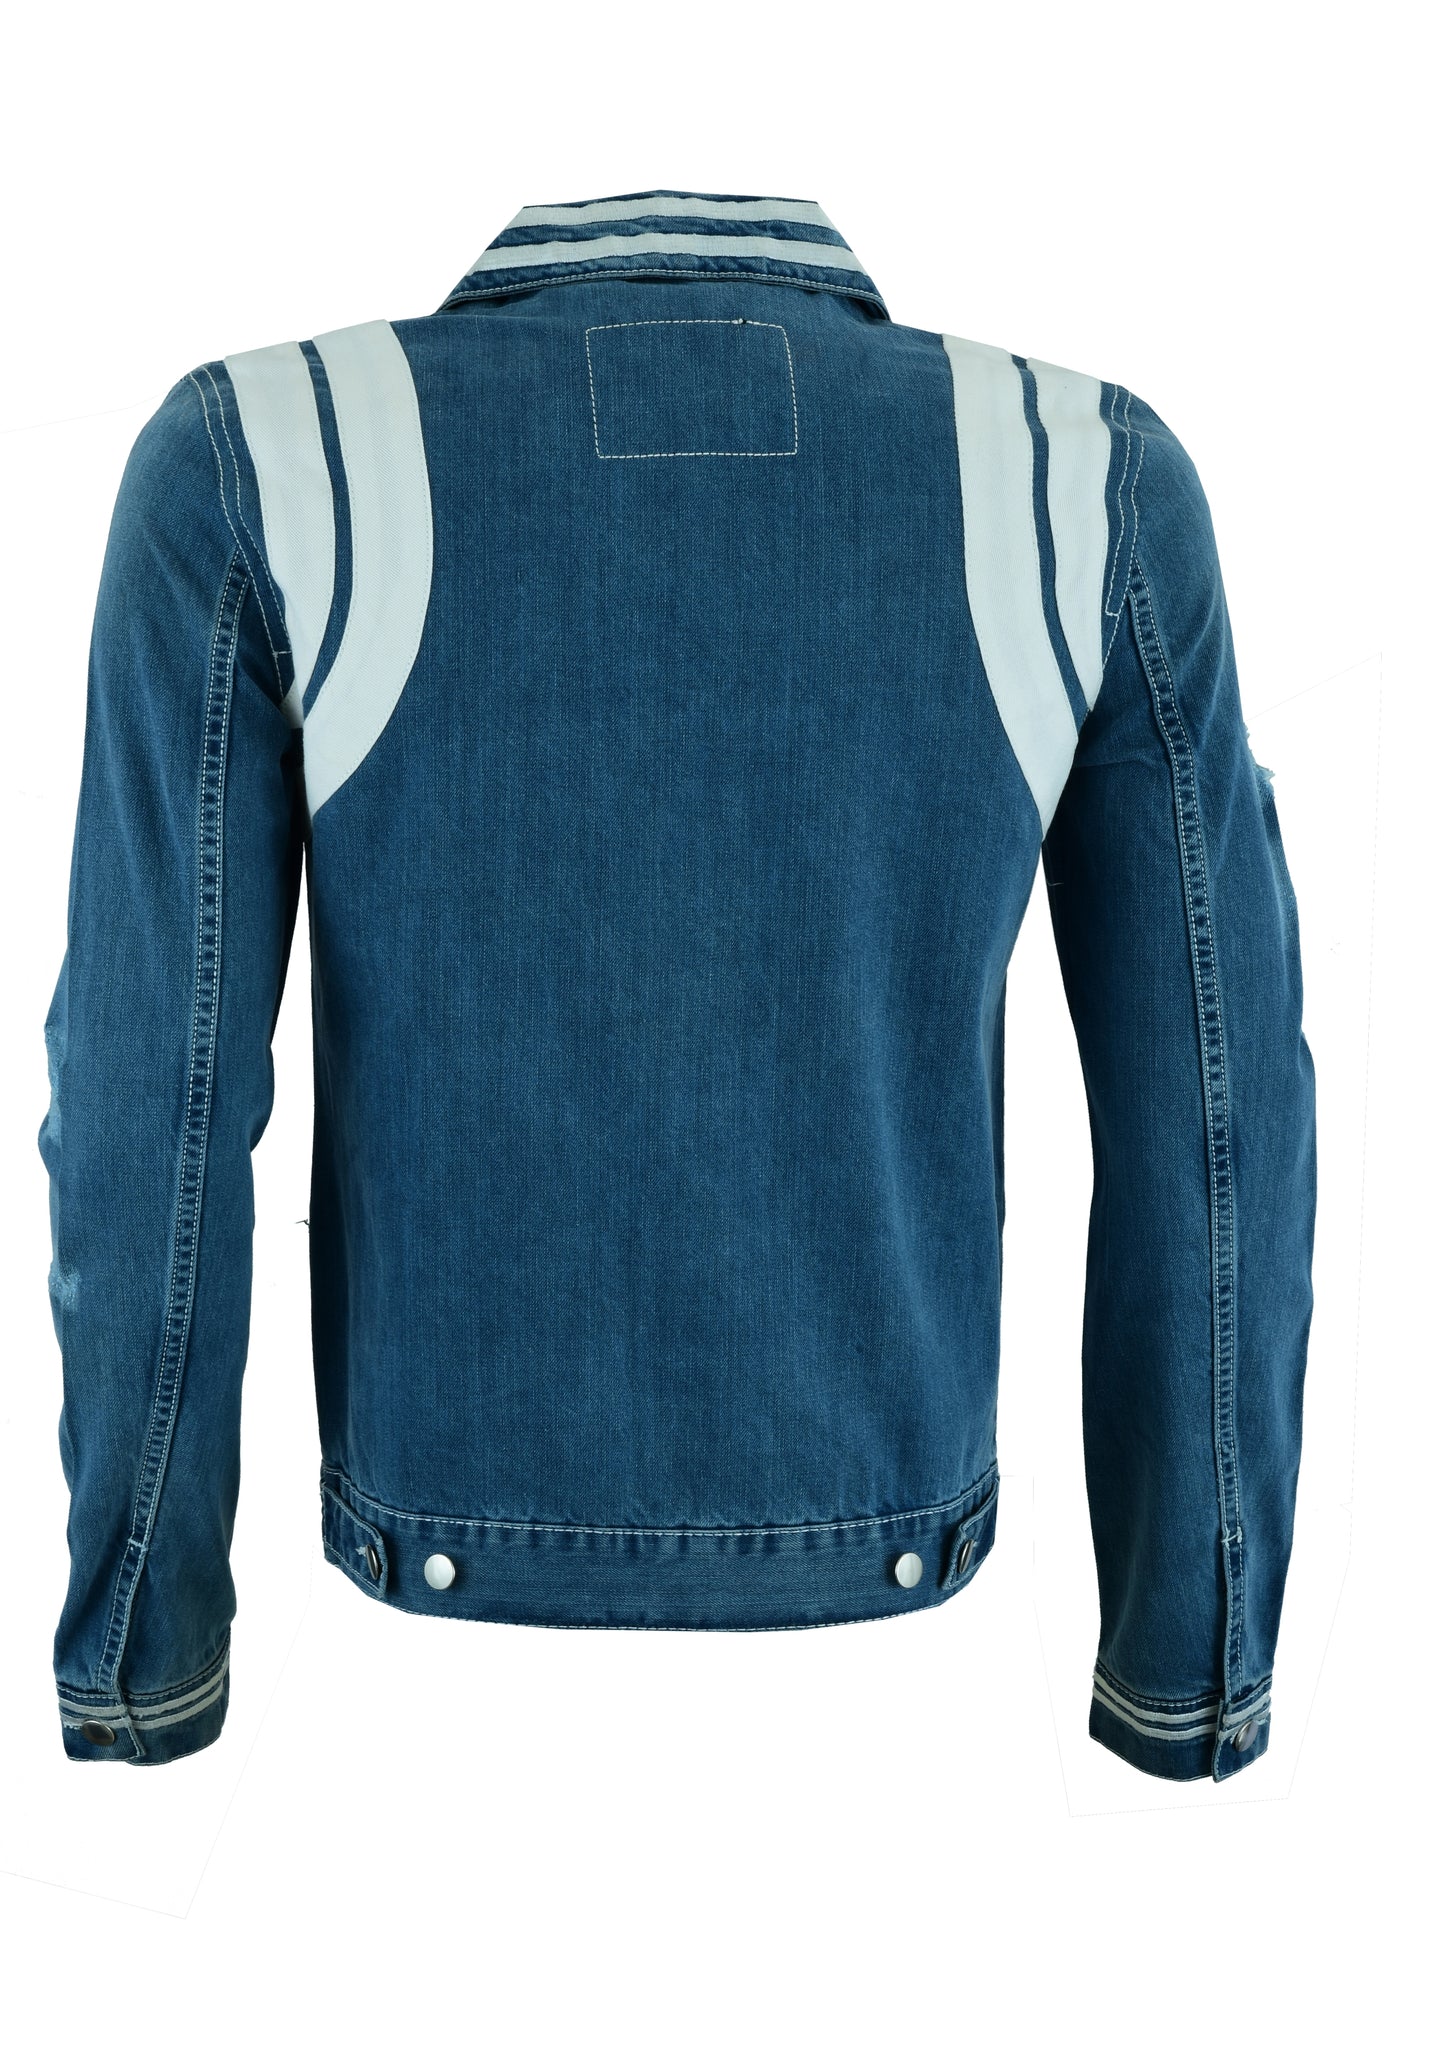 KS105 Blue Denim Jackets Hip-hop Style  Kanvos Sports